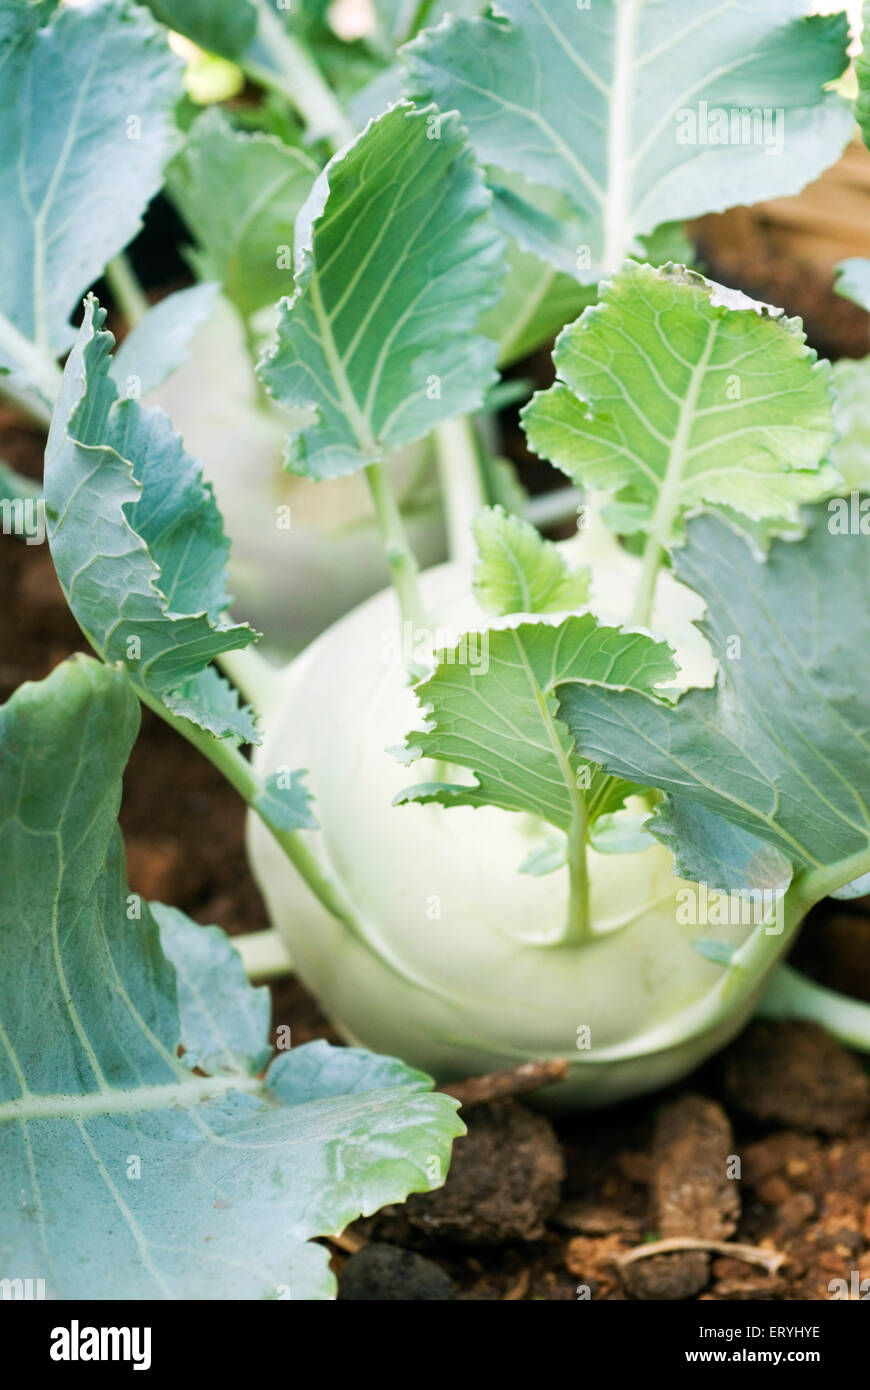 Cabbage brassica oleracea ; India Stock Photo